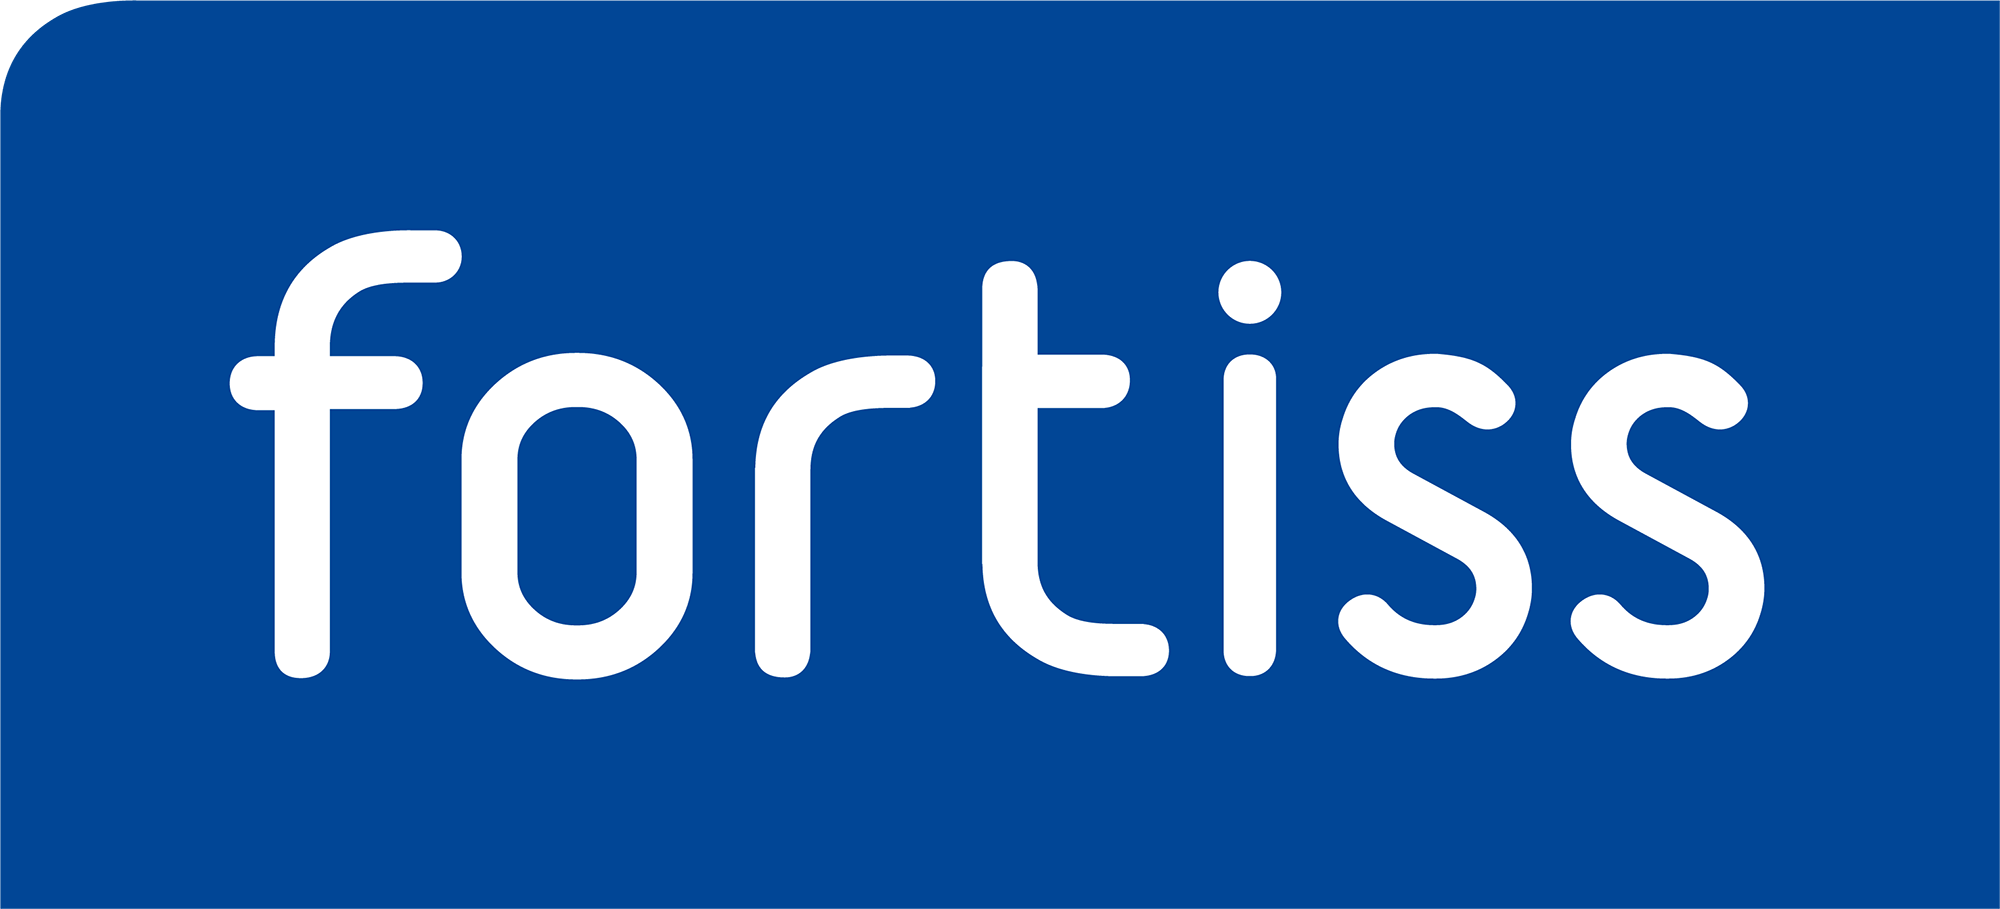 Logo: fortiss - Forschungsinstitut des Freistaats Bayern für softwareintensive Systeme und Services